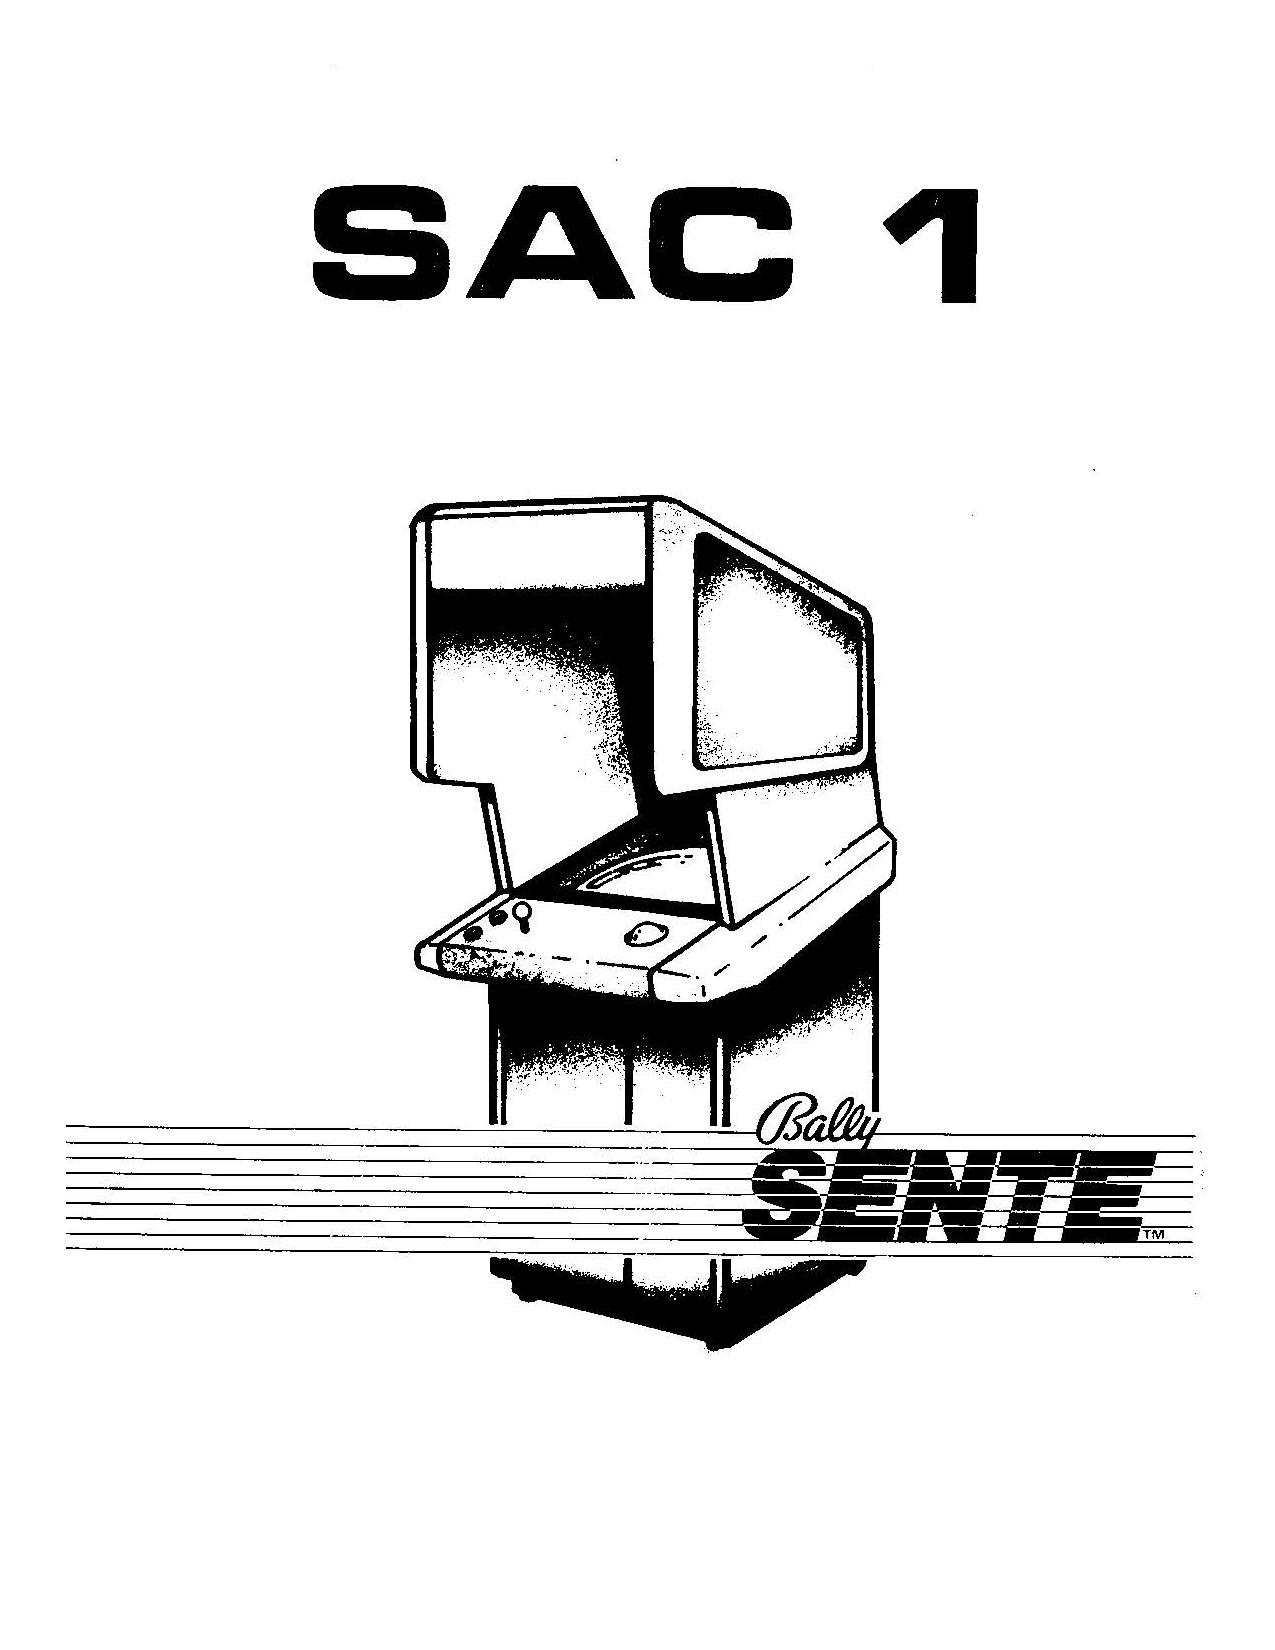 SAC-1 (Bally Cabinet) (Op-Parts-Schem) (U)